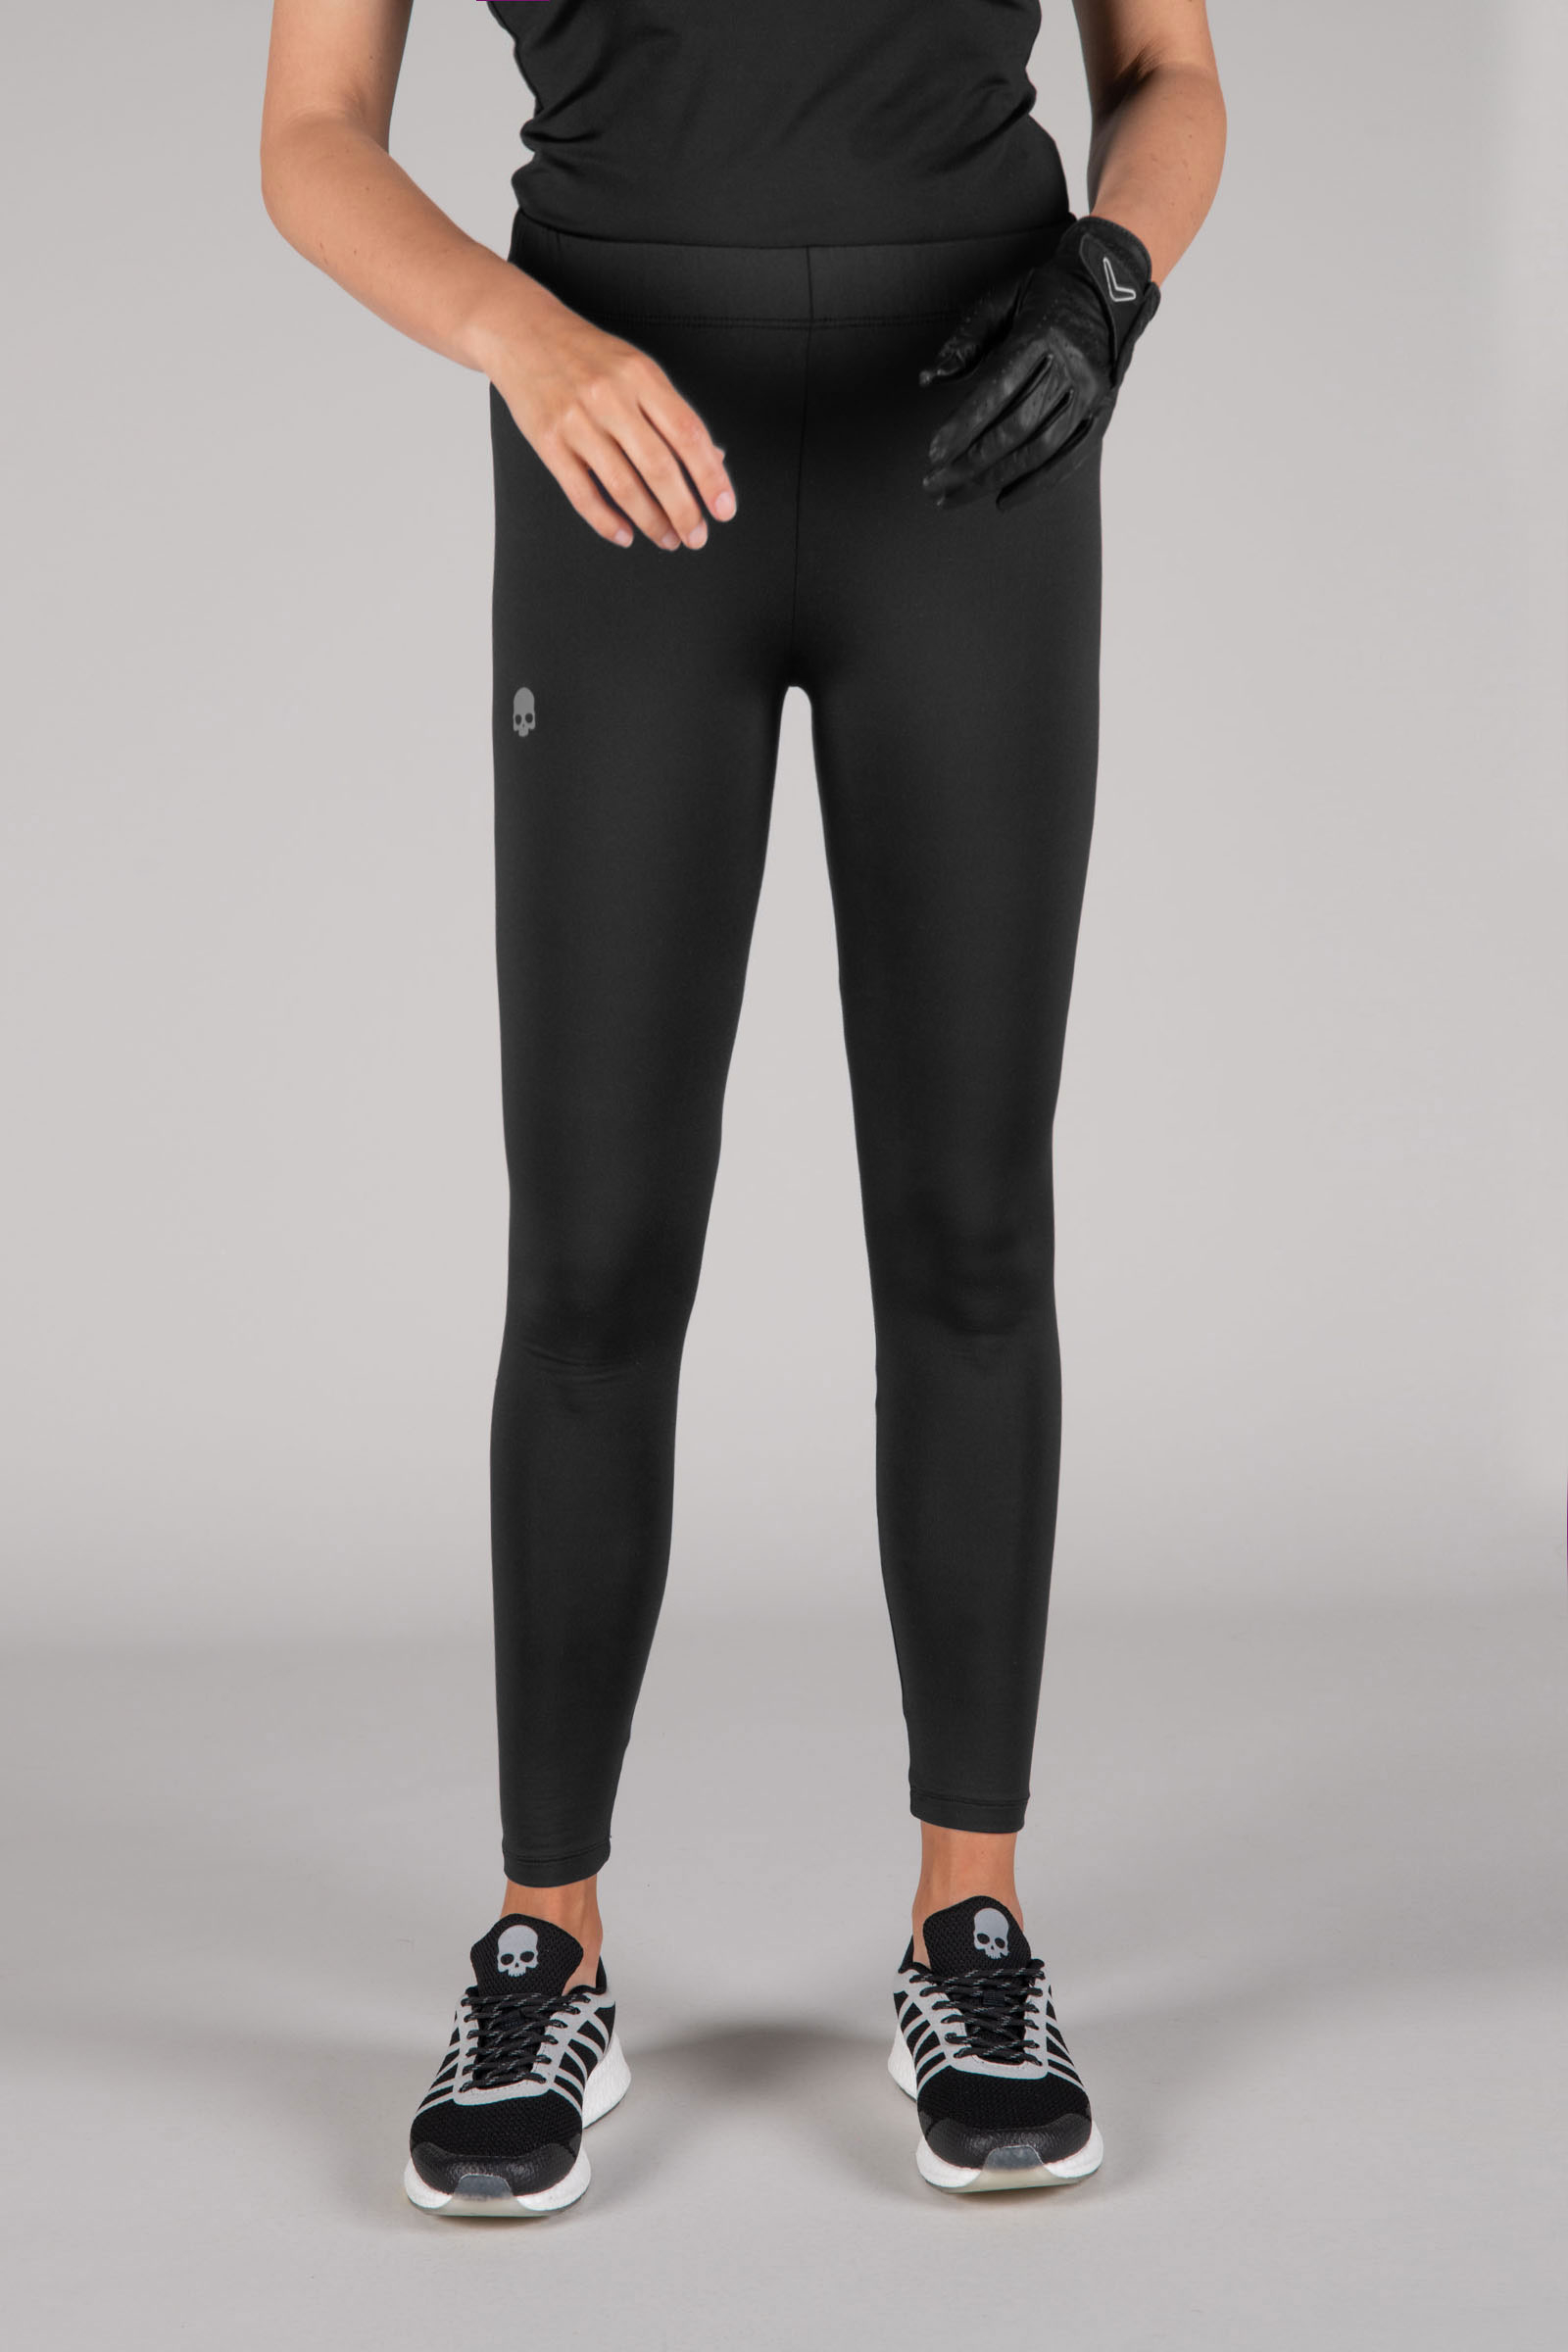 GOLF LEGGINGS - BLACK - Hydrogen - Luxury Sportwear